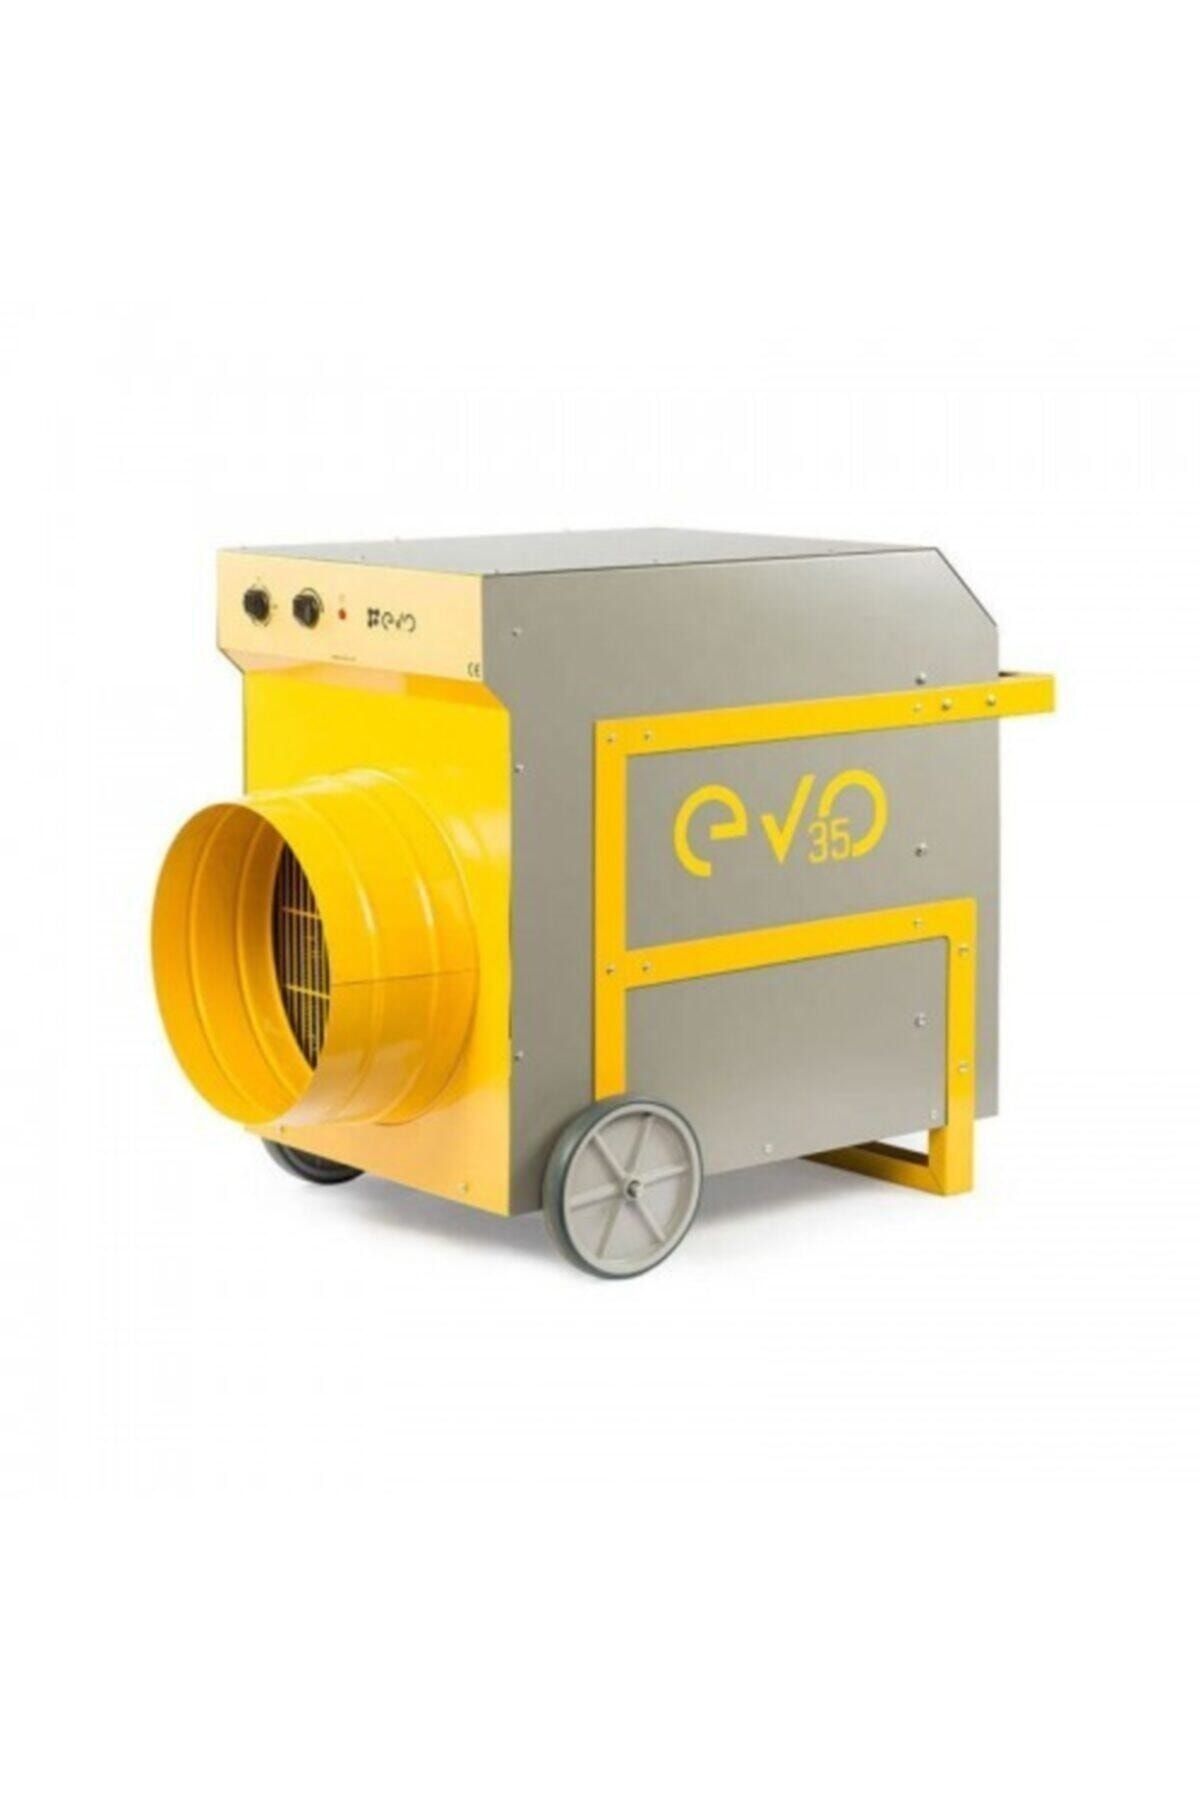 evotech Evo35 35kw Elektrikli Fanlı Isıtıcı